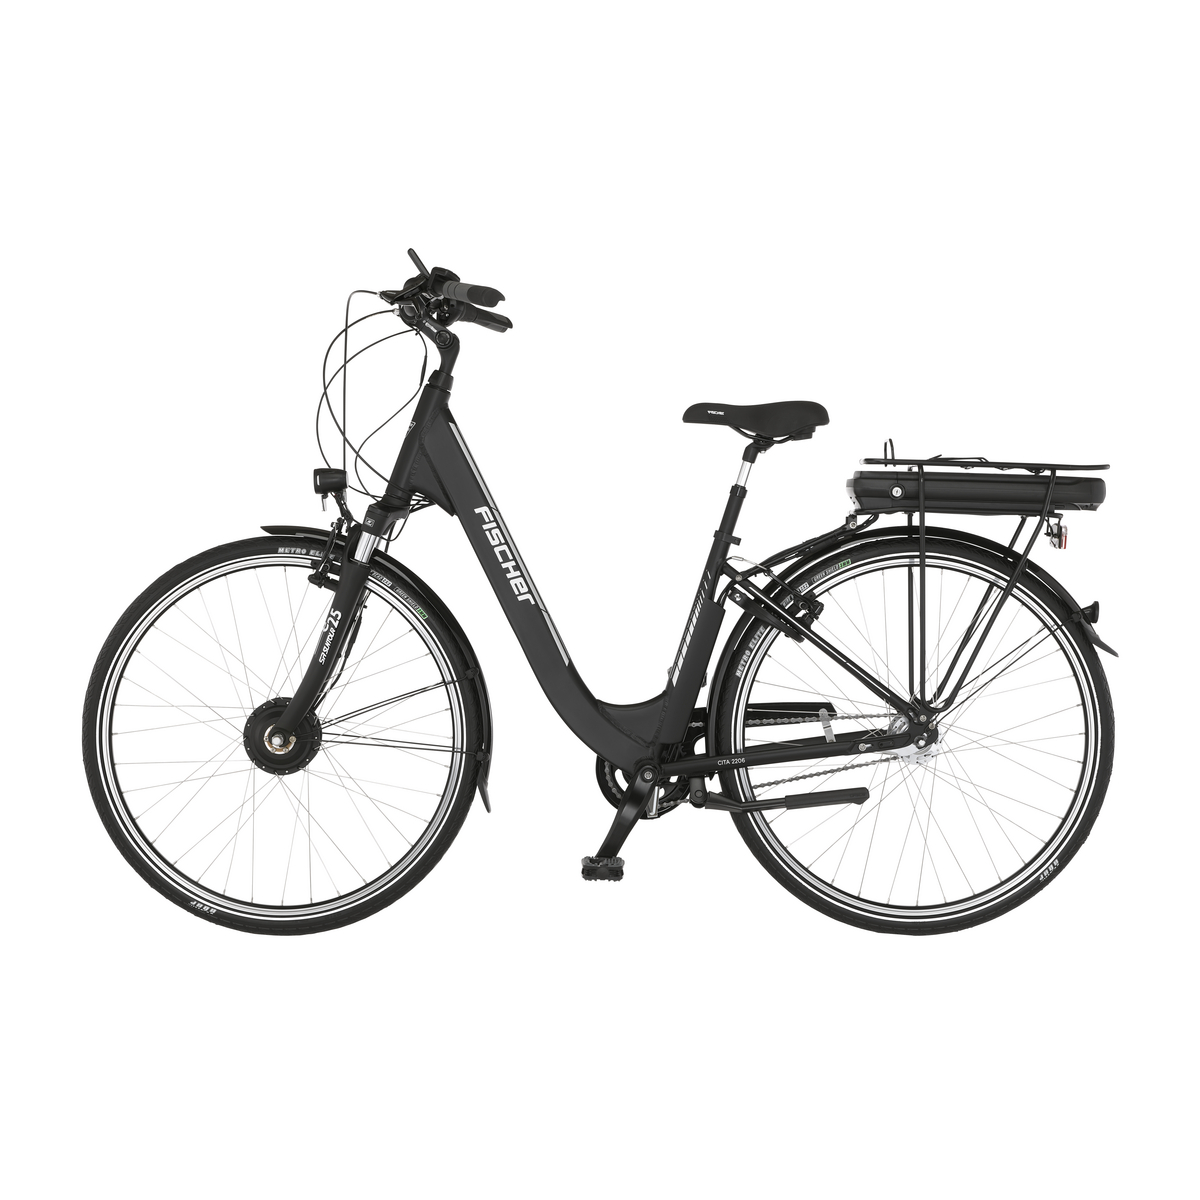 FISCHER CITA ECU 2206 City E-Bike - schwarz matt, 28 Zoll, RH 44 cm, 522 Wh  Generalüberholt | E-Bikes City Outlet | E-Bikes - Outlet | Outlet | Sale%